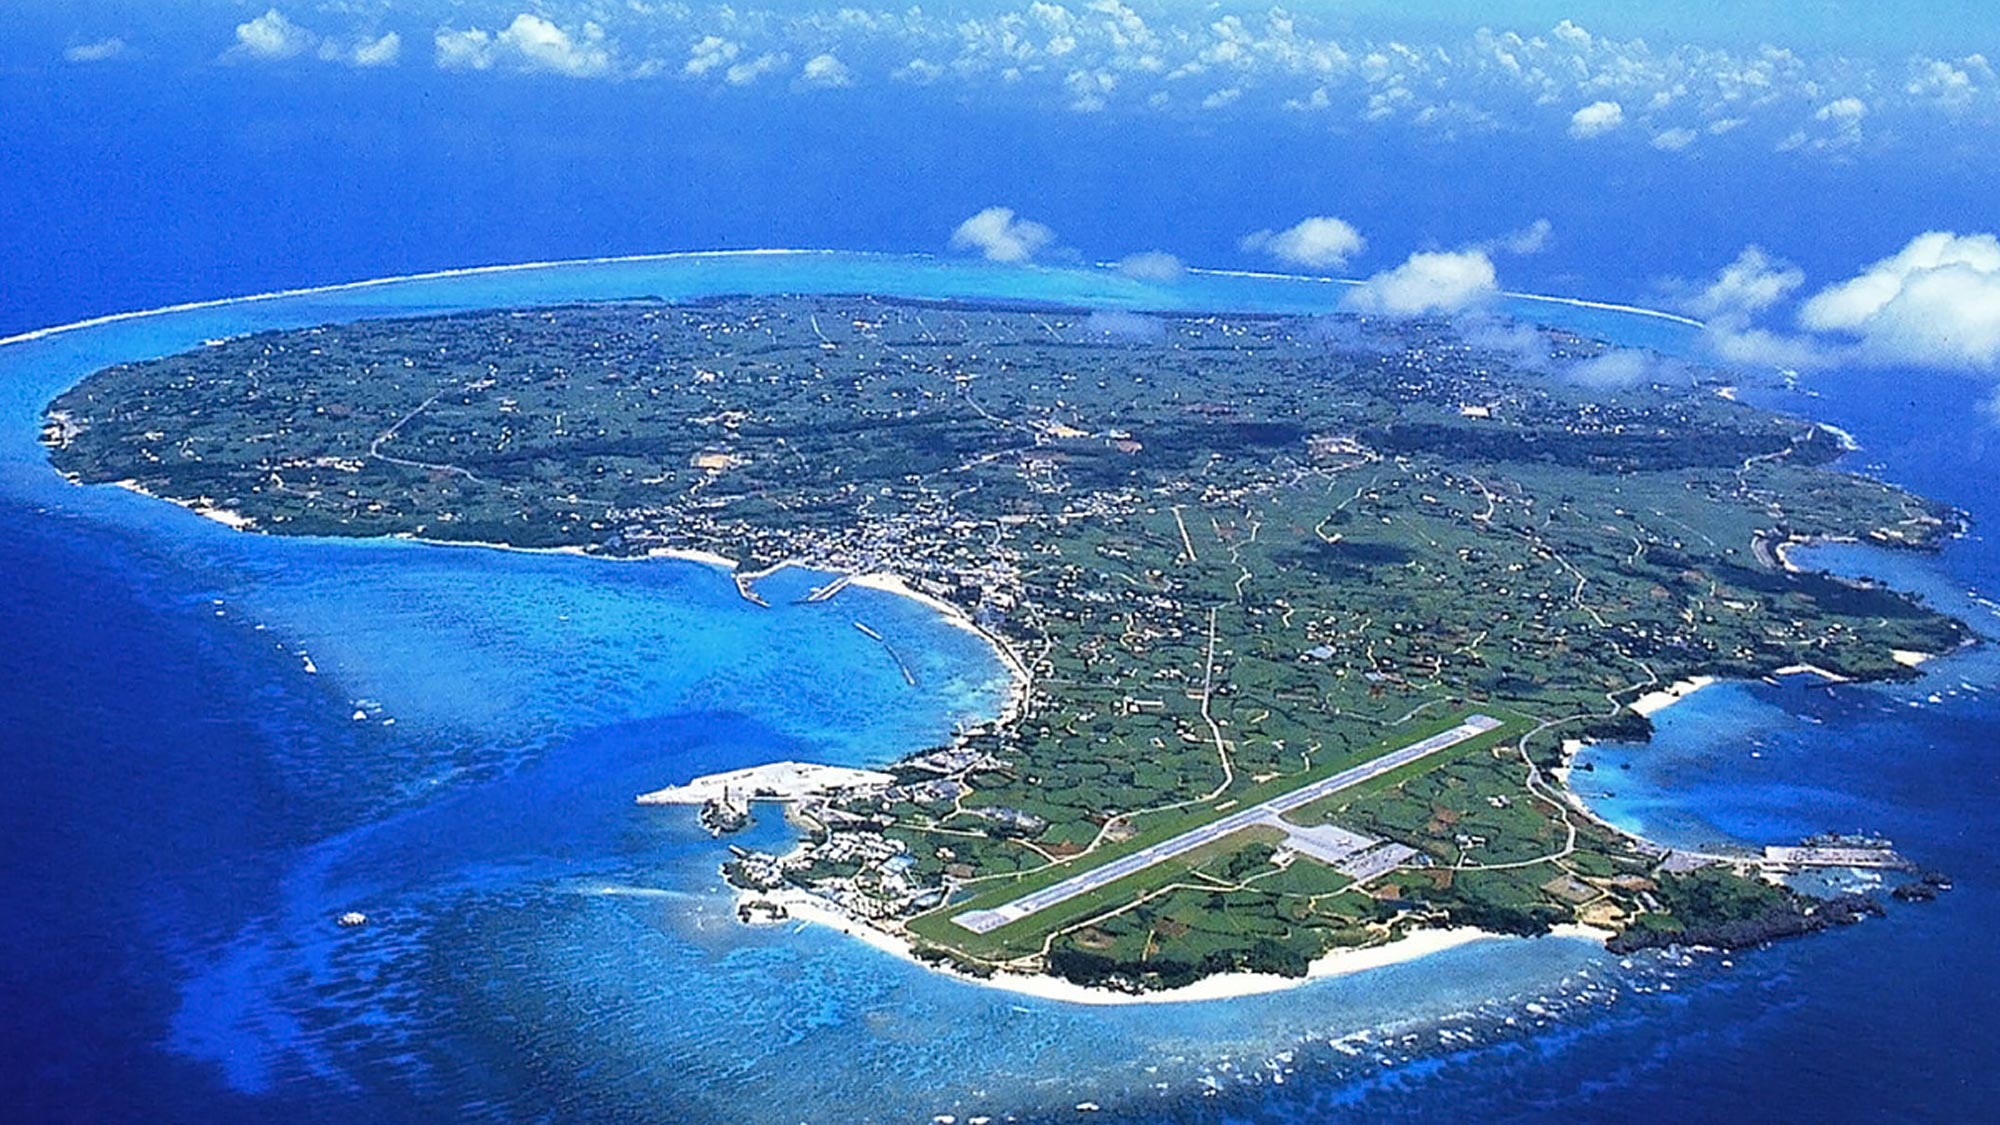 【与論島全景】奄美群島のひとつで鹿児島県最南端の島です